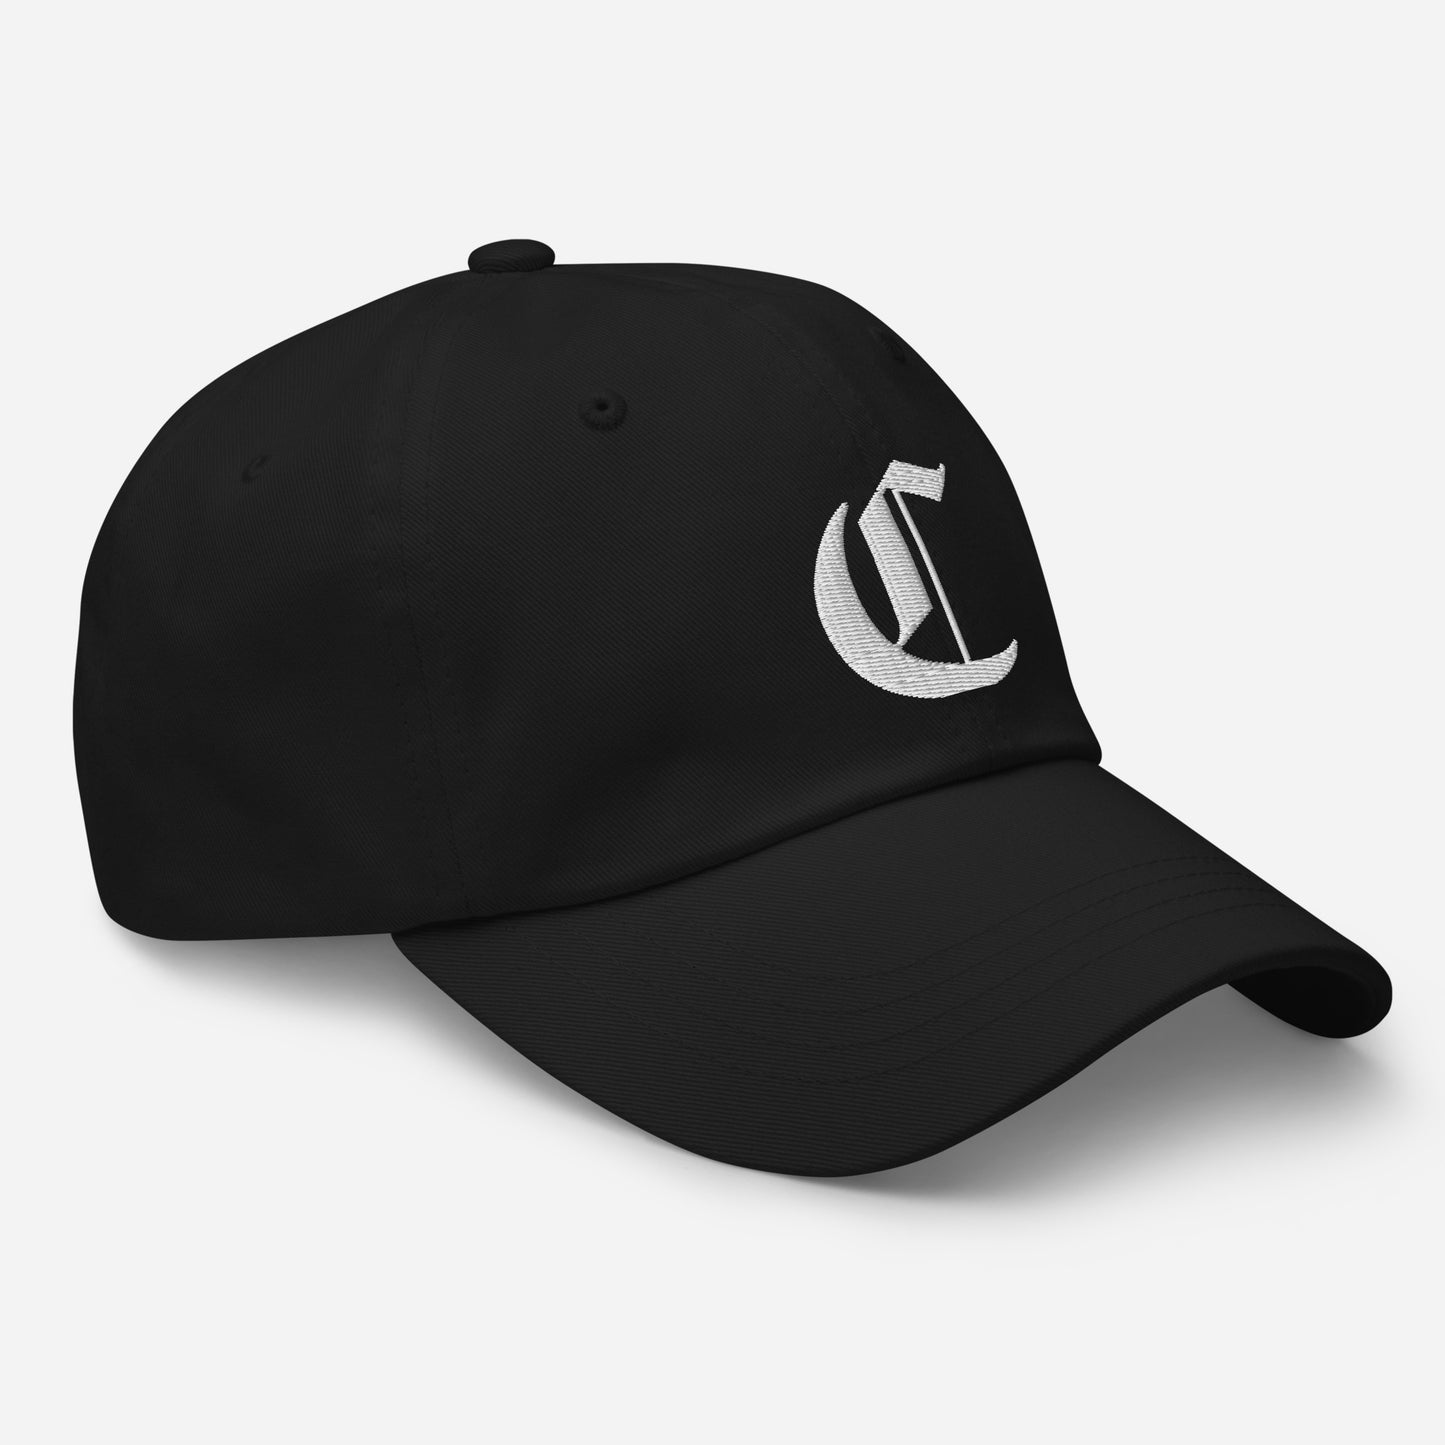 Black "C" Dad Hat